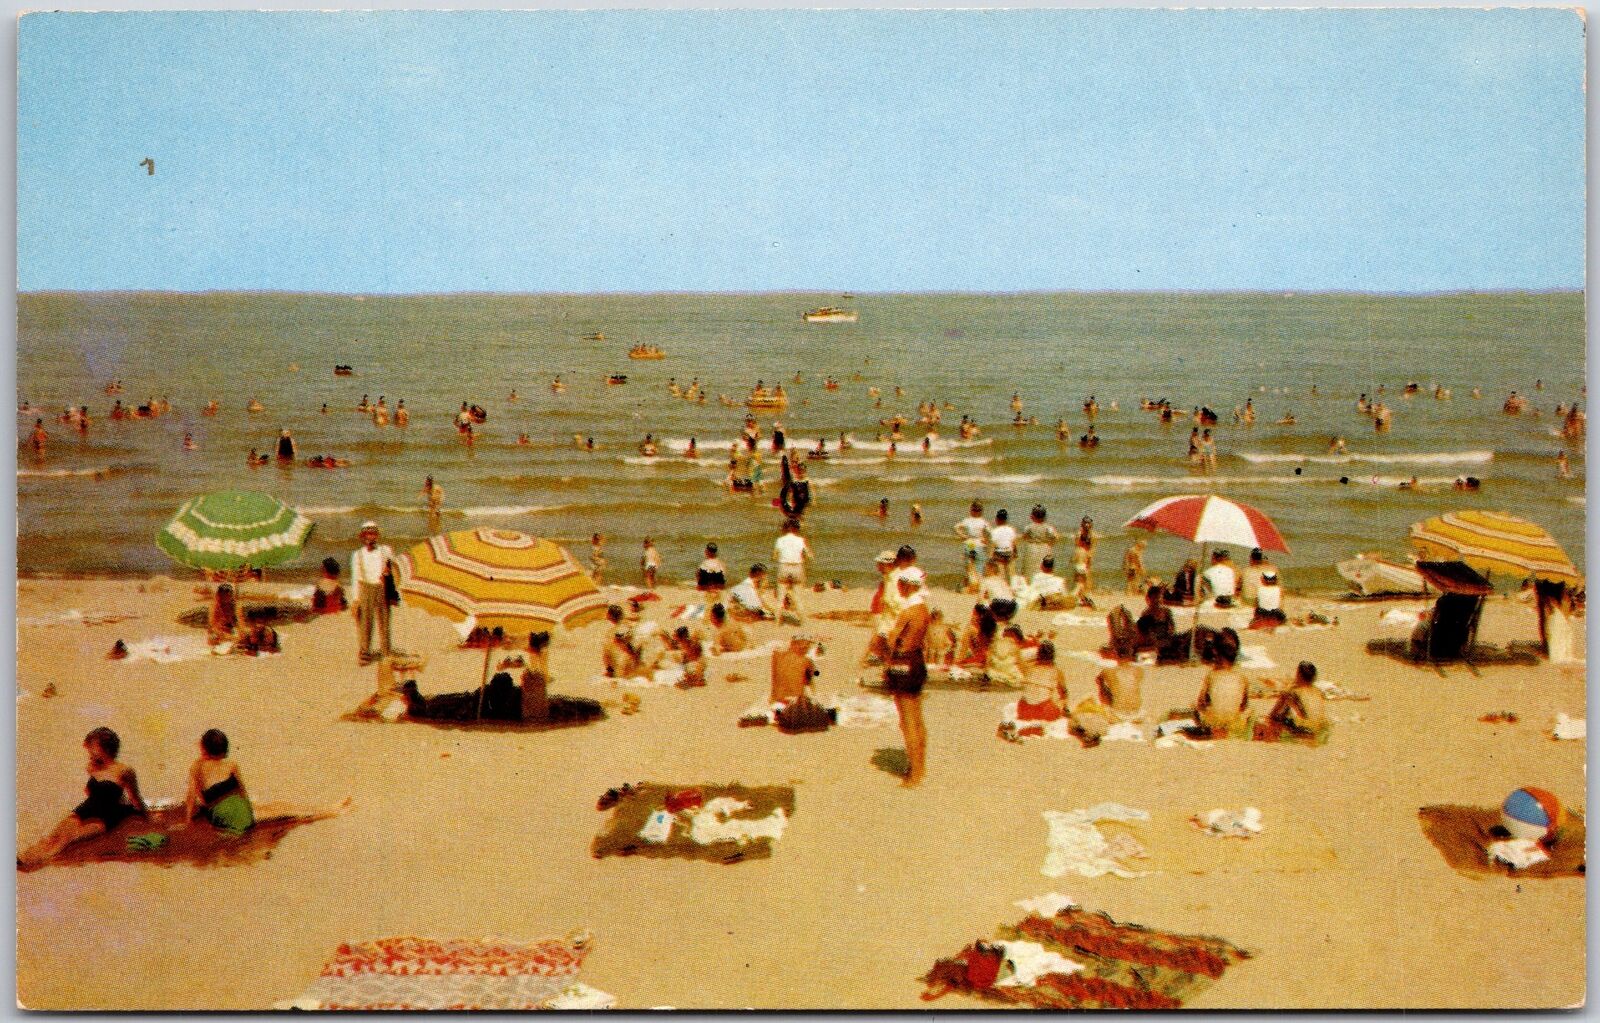 Cedar Point Ohio OH, Bathing Sand Ocean Beach on Lake Erie, Vintage Postcard